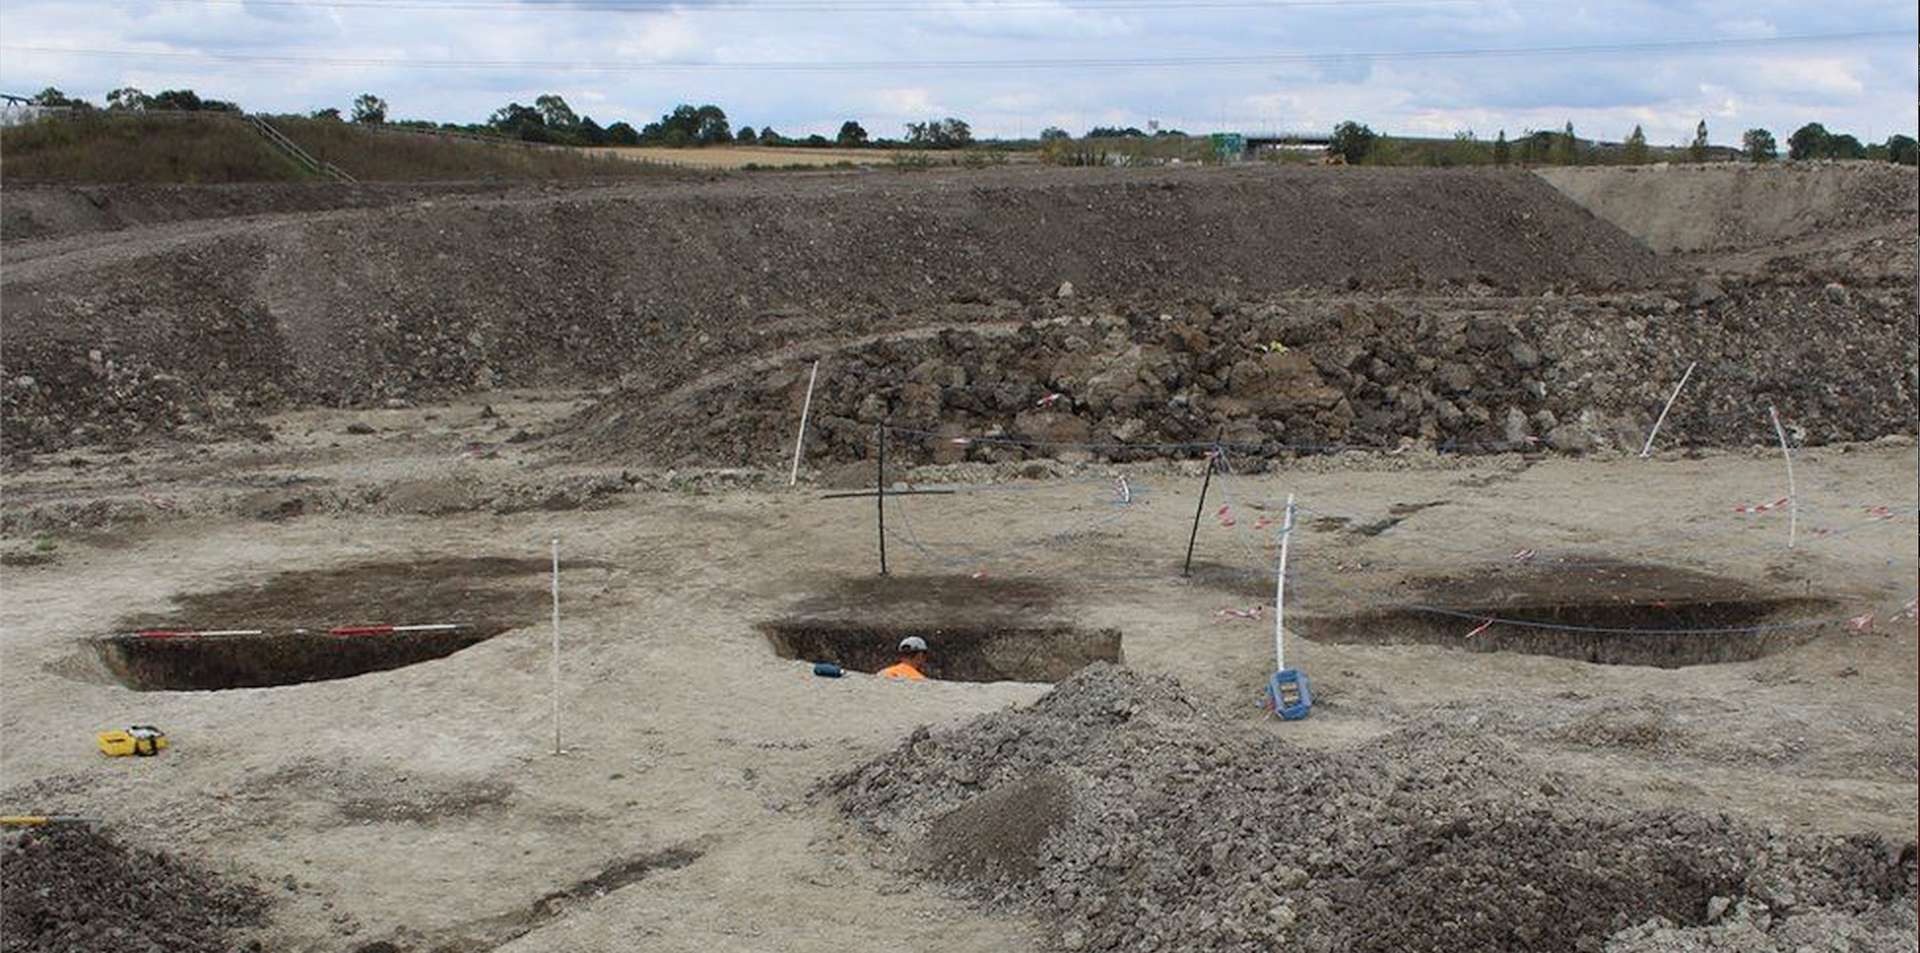 capture decran 2023 07 07 a 161 - 25 über 8000 Jahre alte künstliche Gruben nördlich von London entdeckt